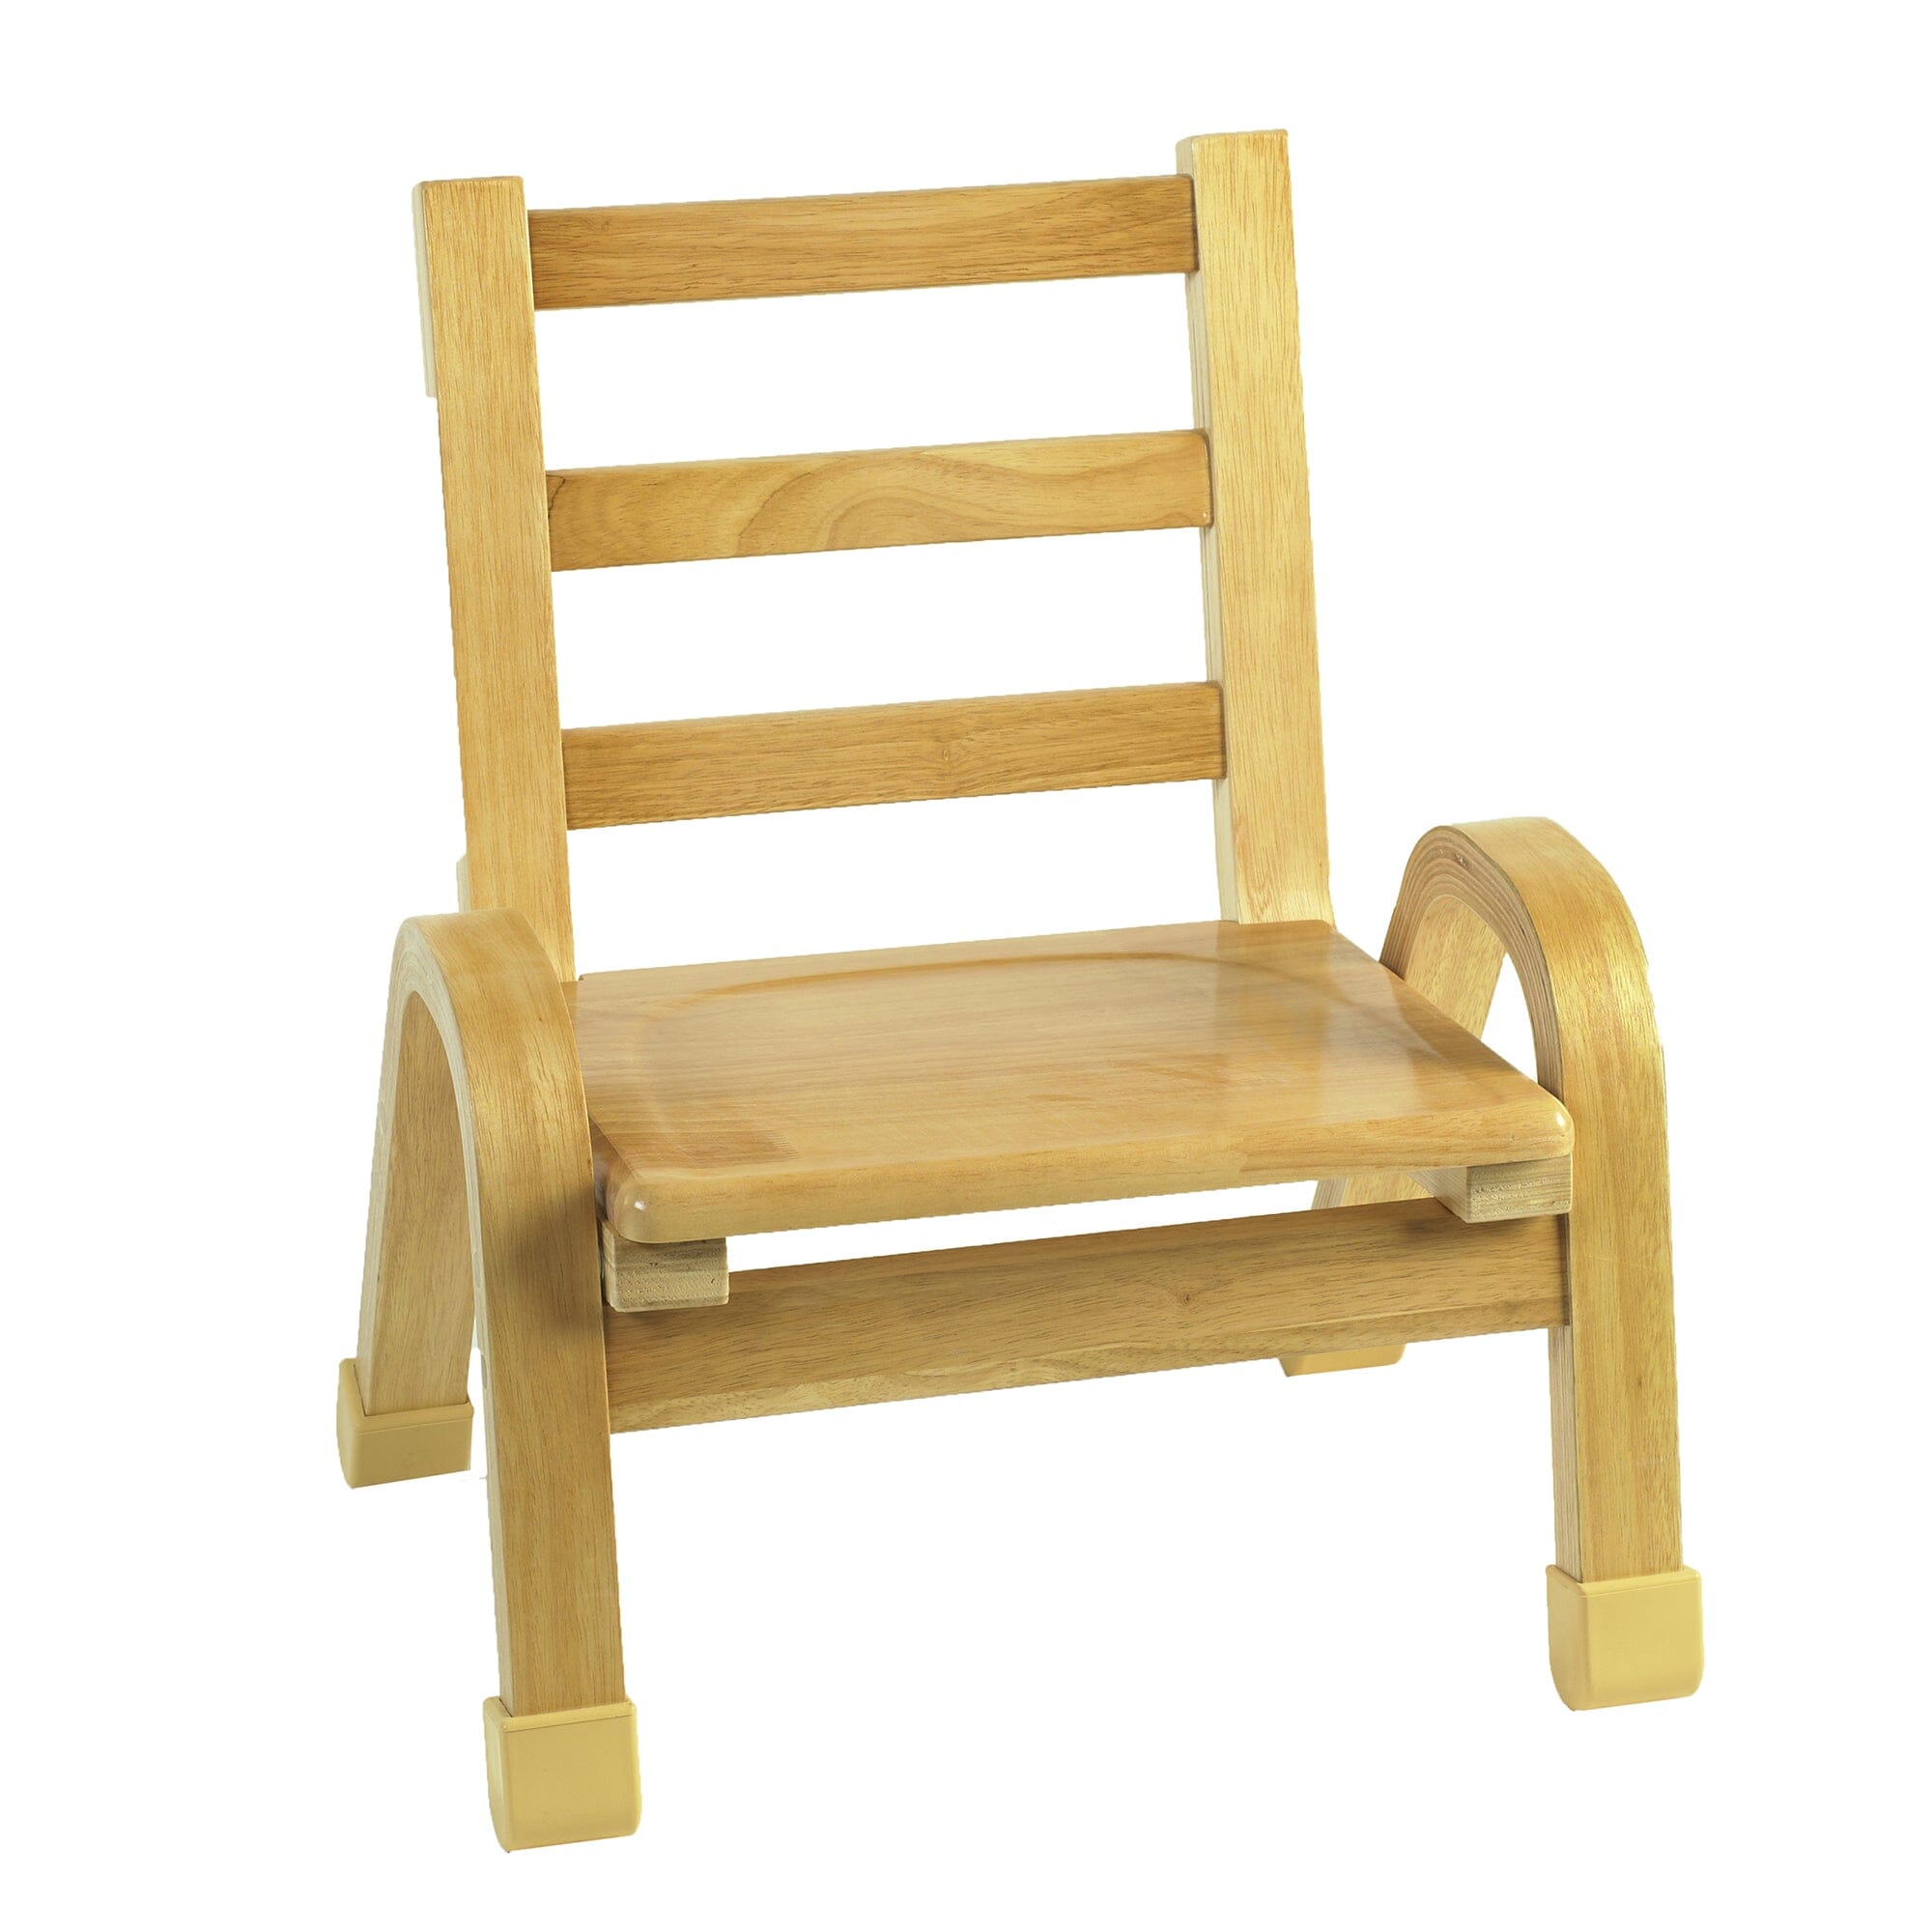 Natural Wood Furniture Chair 9" - louisekool